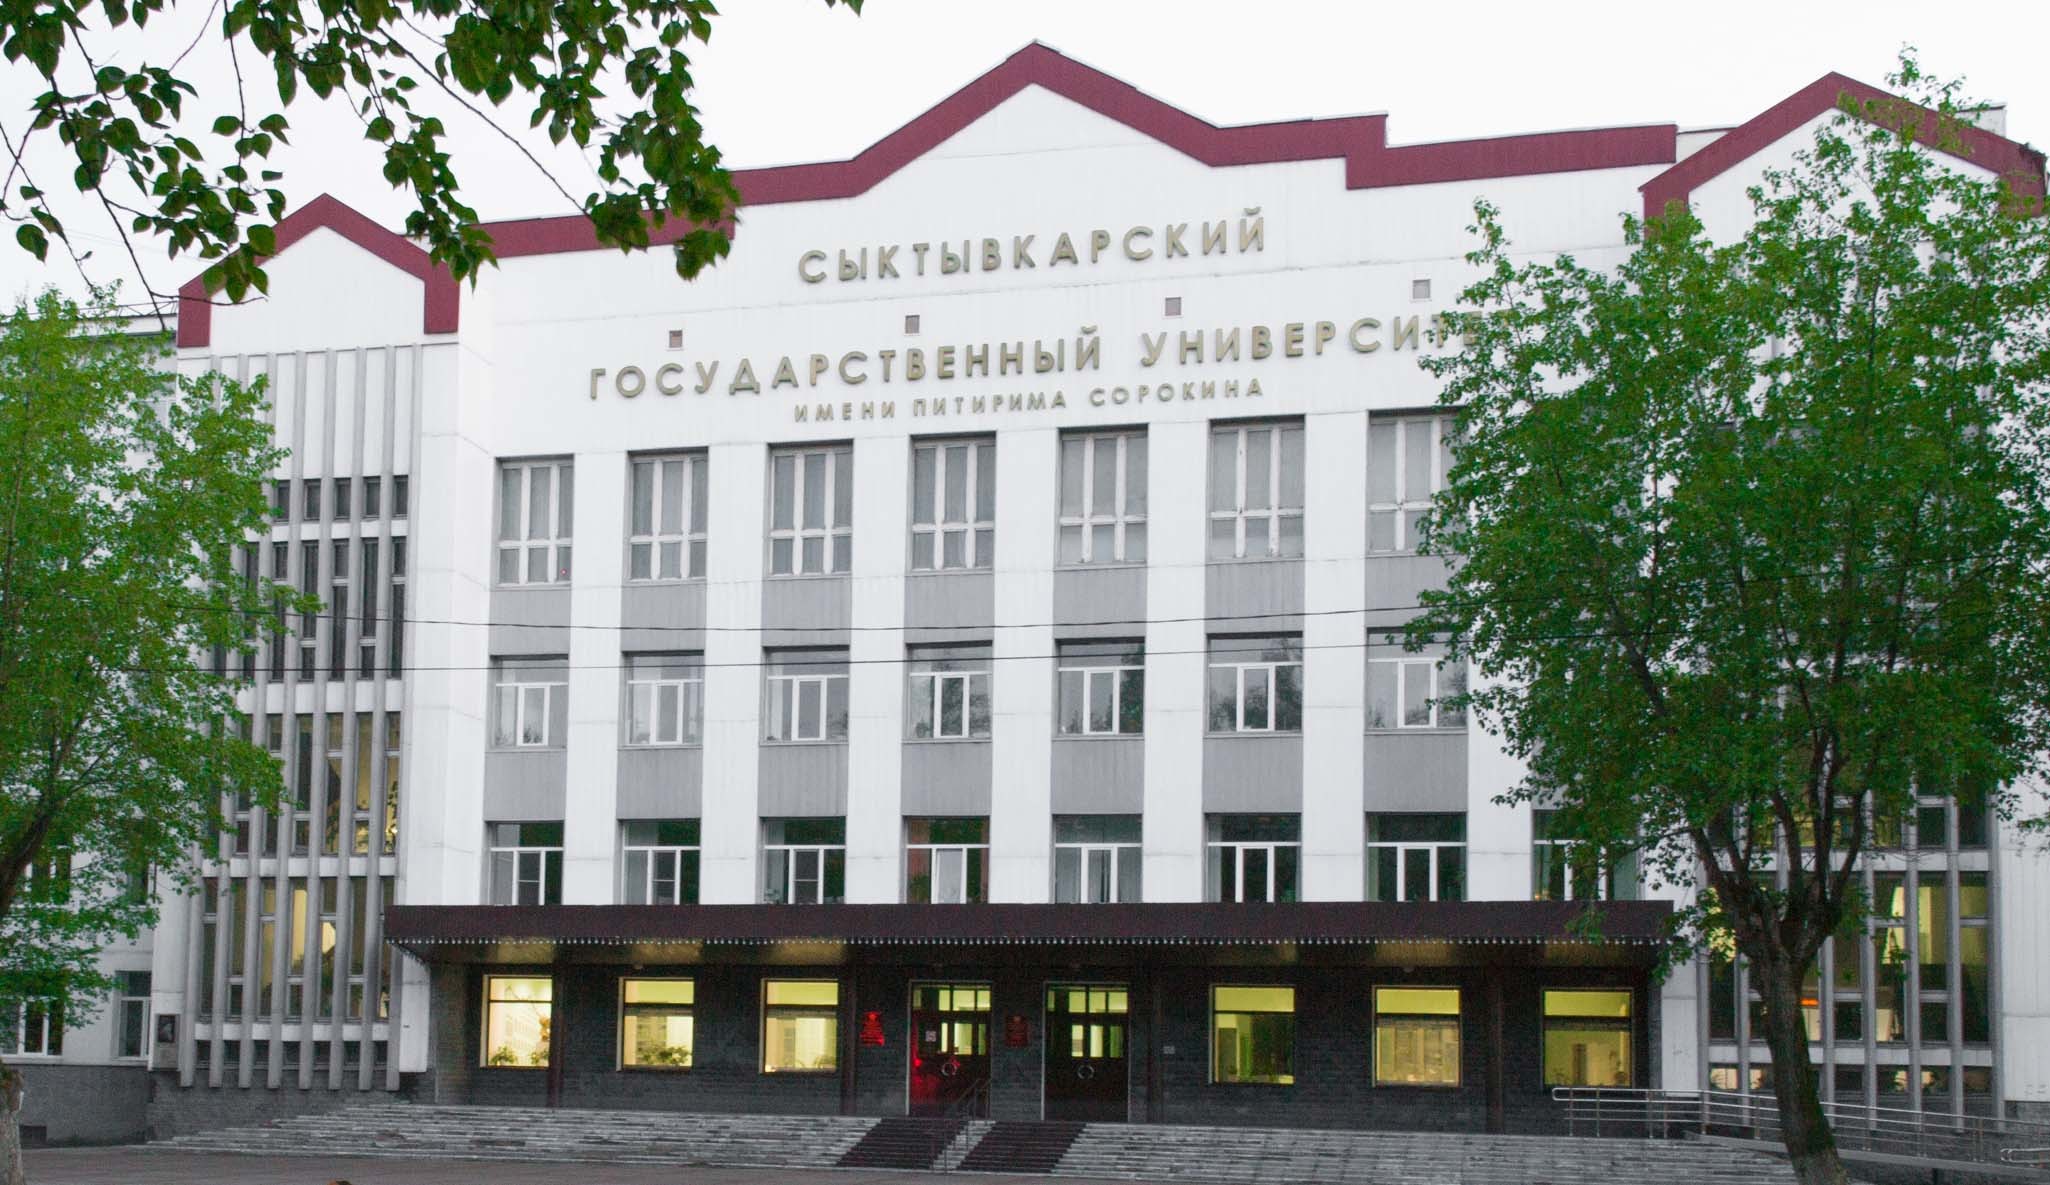 Работники Сыктывкарского государственного университета зачисляли незаконно студентов, которые не появлялись никогда в стенах учебного заведения